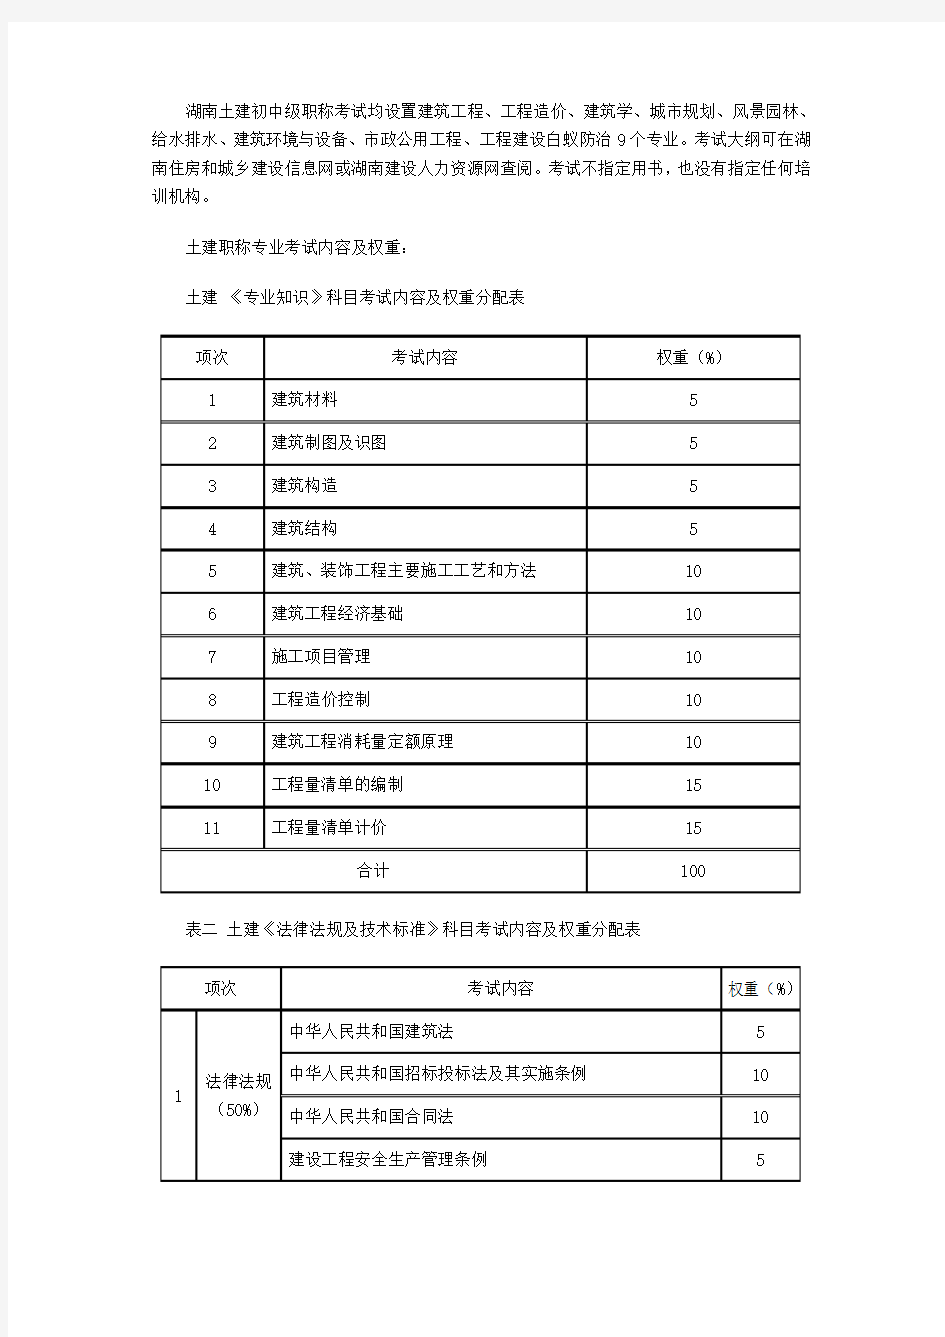 2019年湖南土建职称考试《工程造价》考试内容